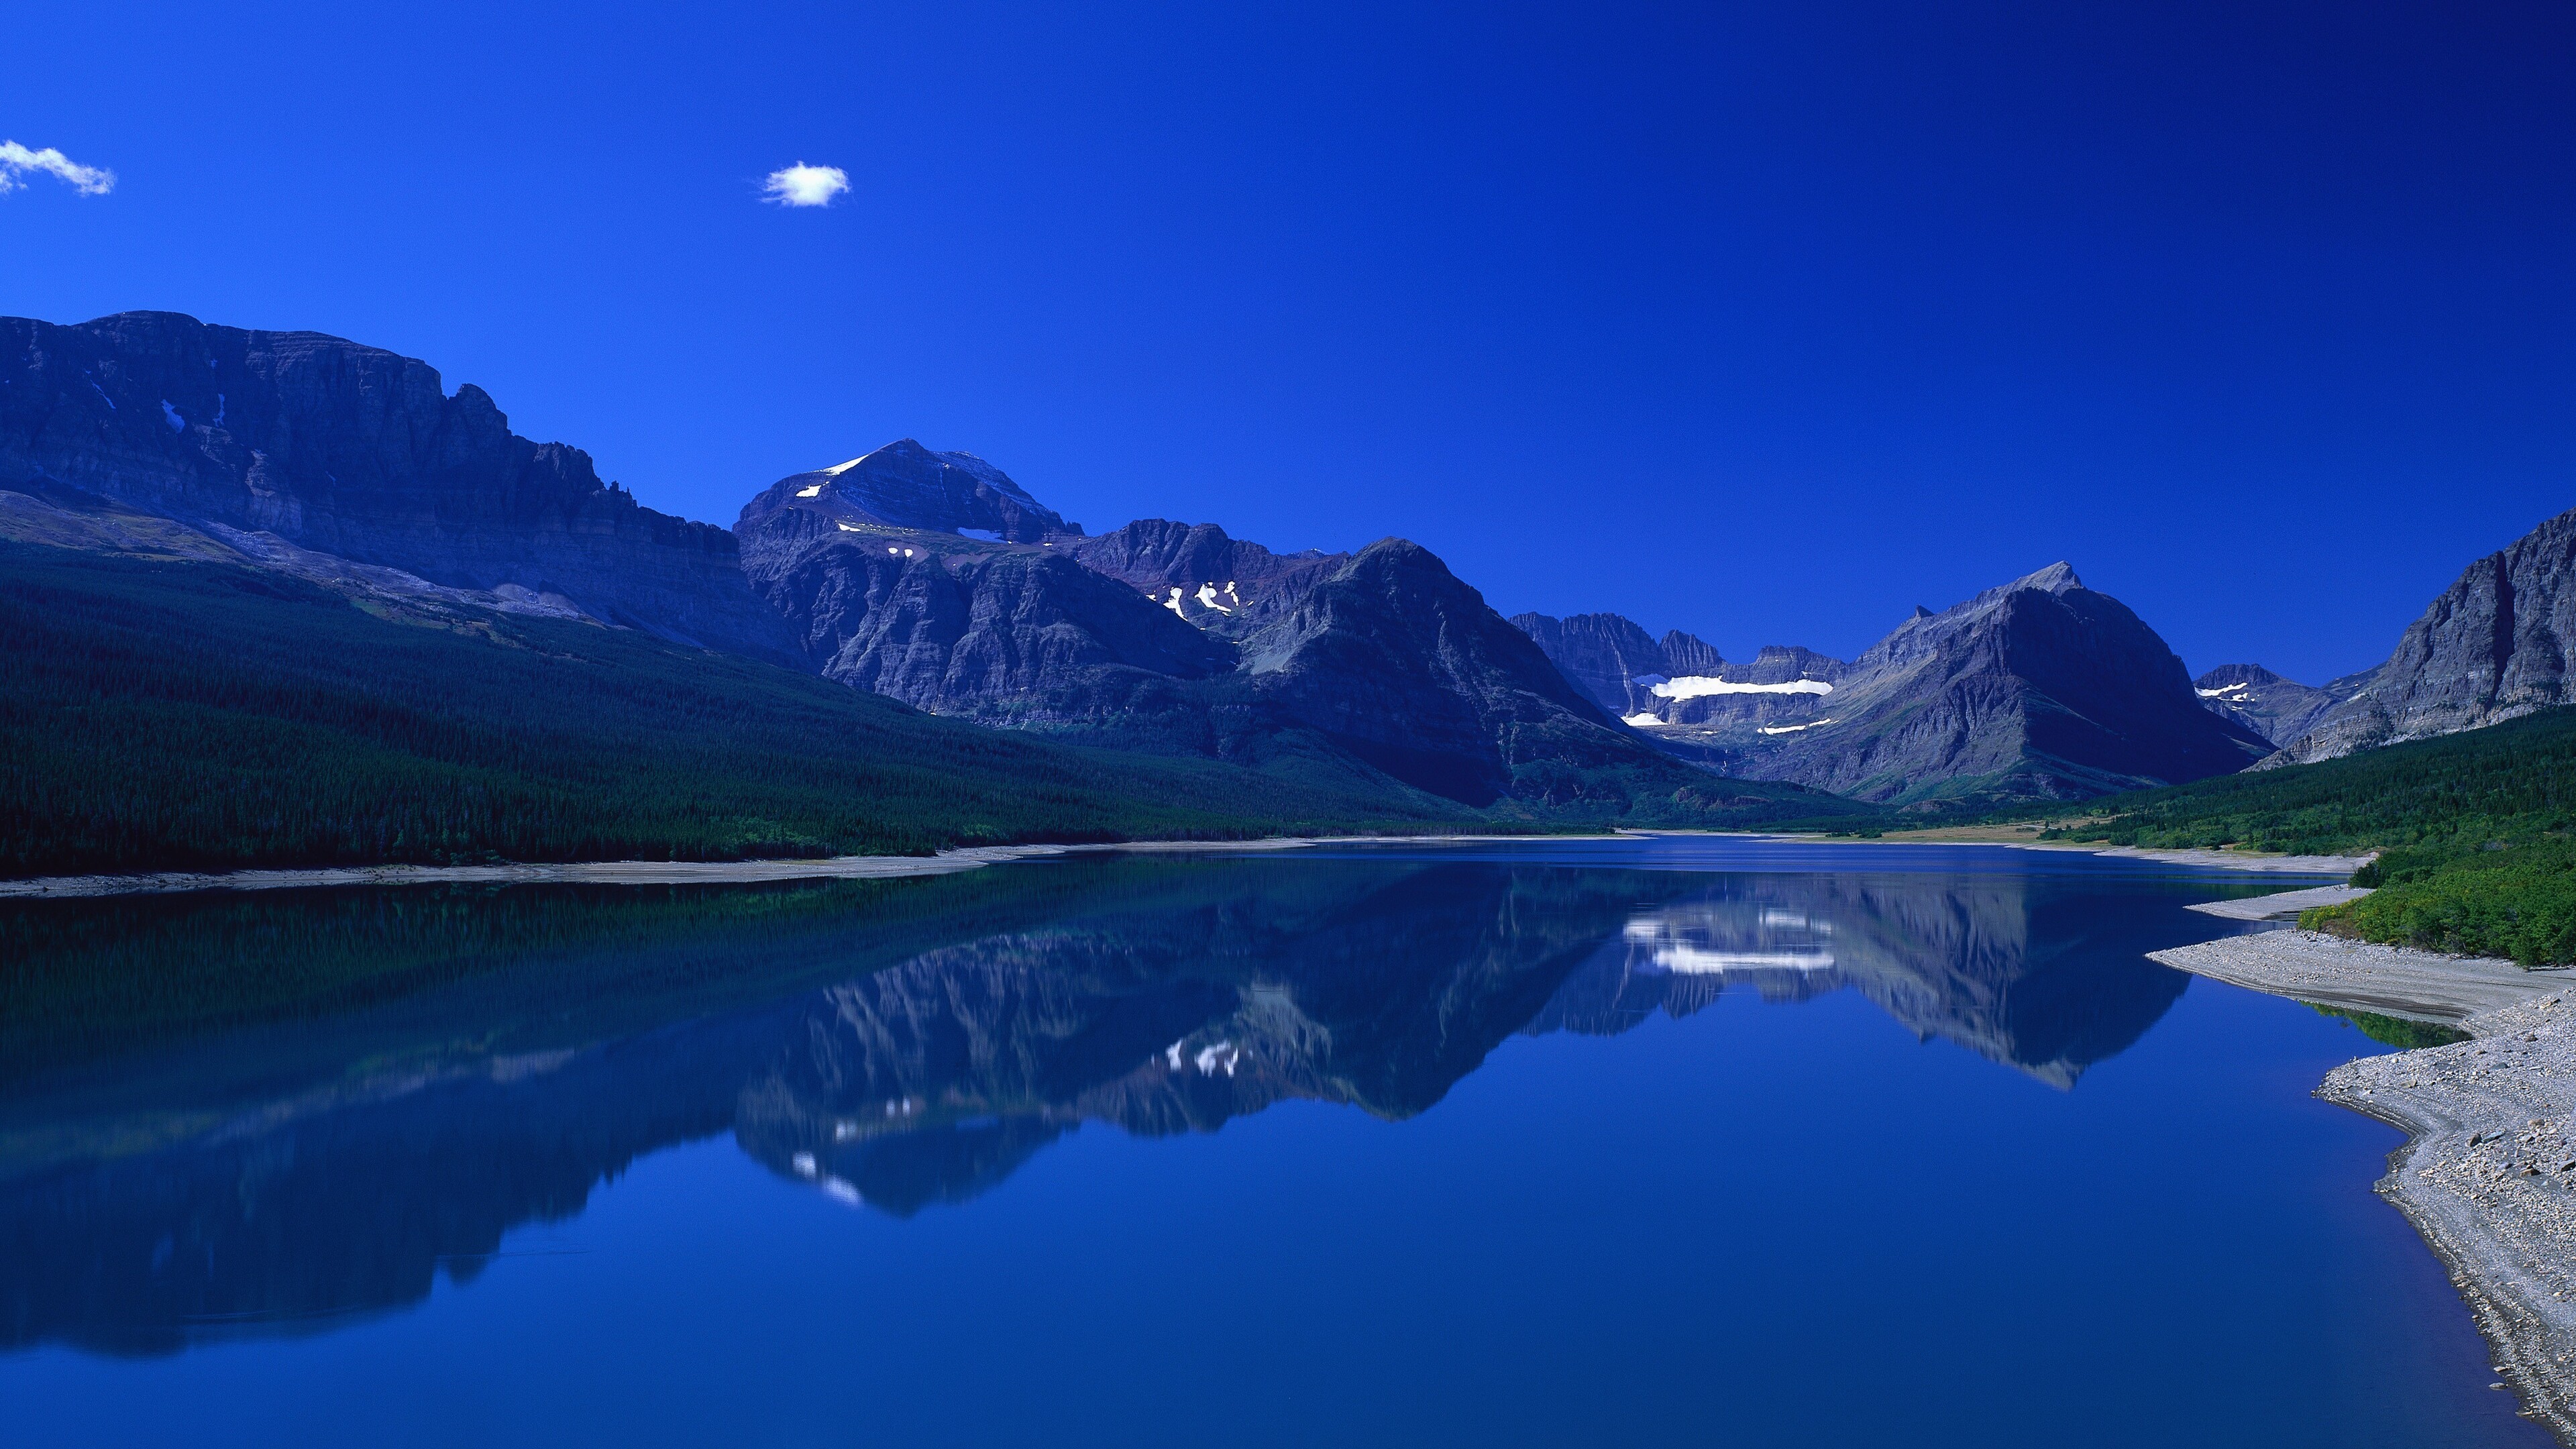 Картинки на тему. Горное озеро. Озеро в горах. Синие горы. Горы и вода.